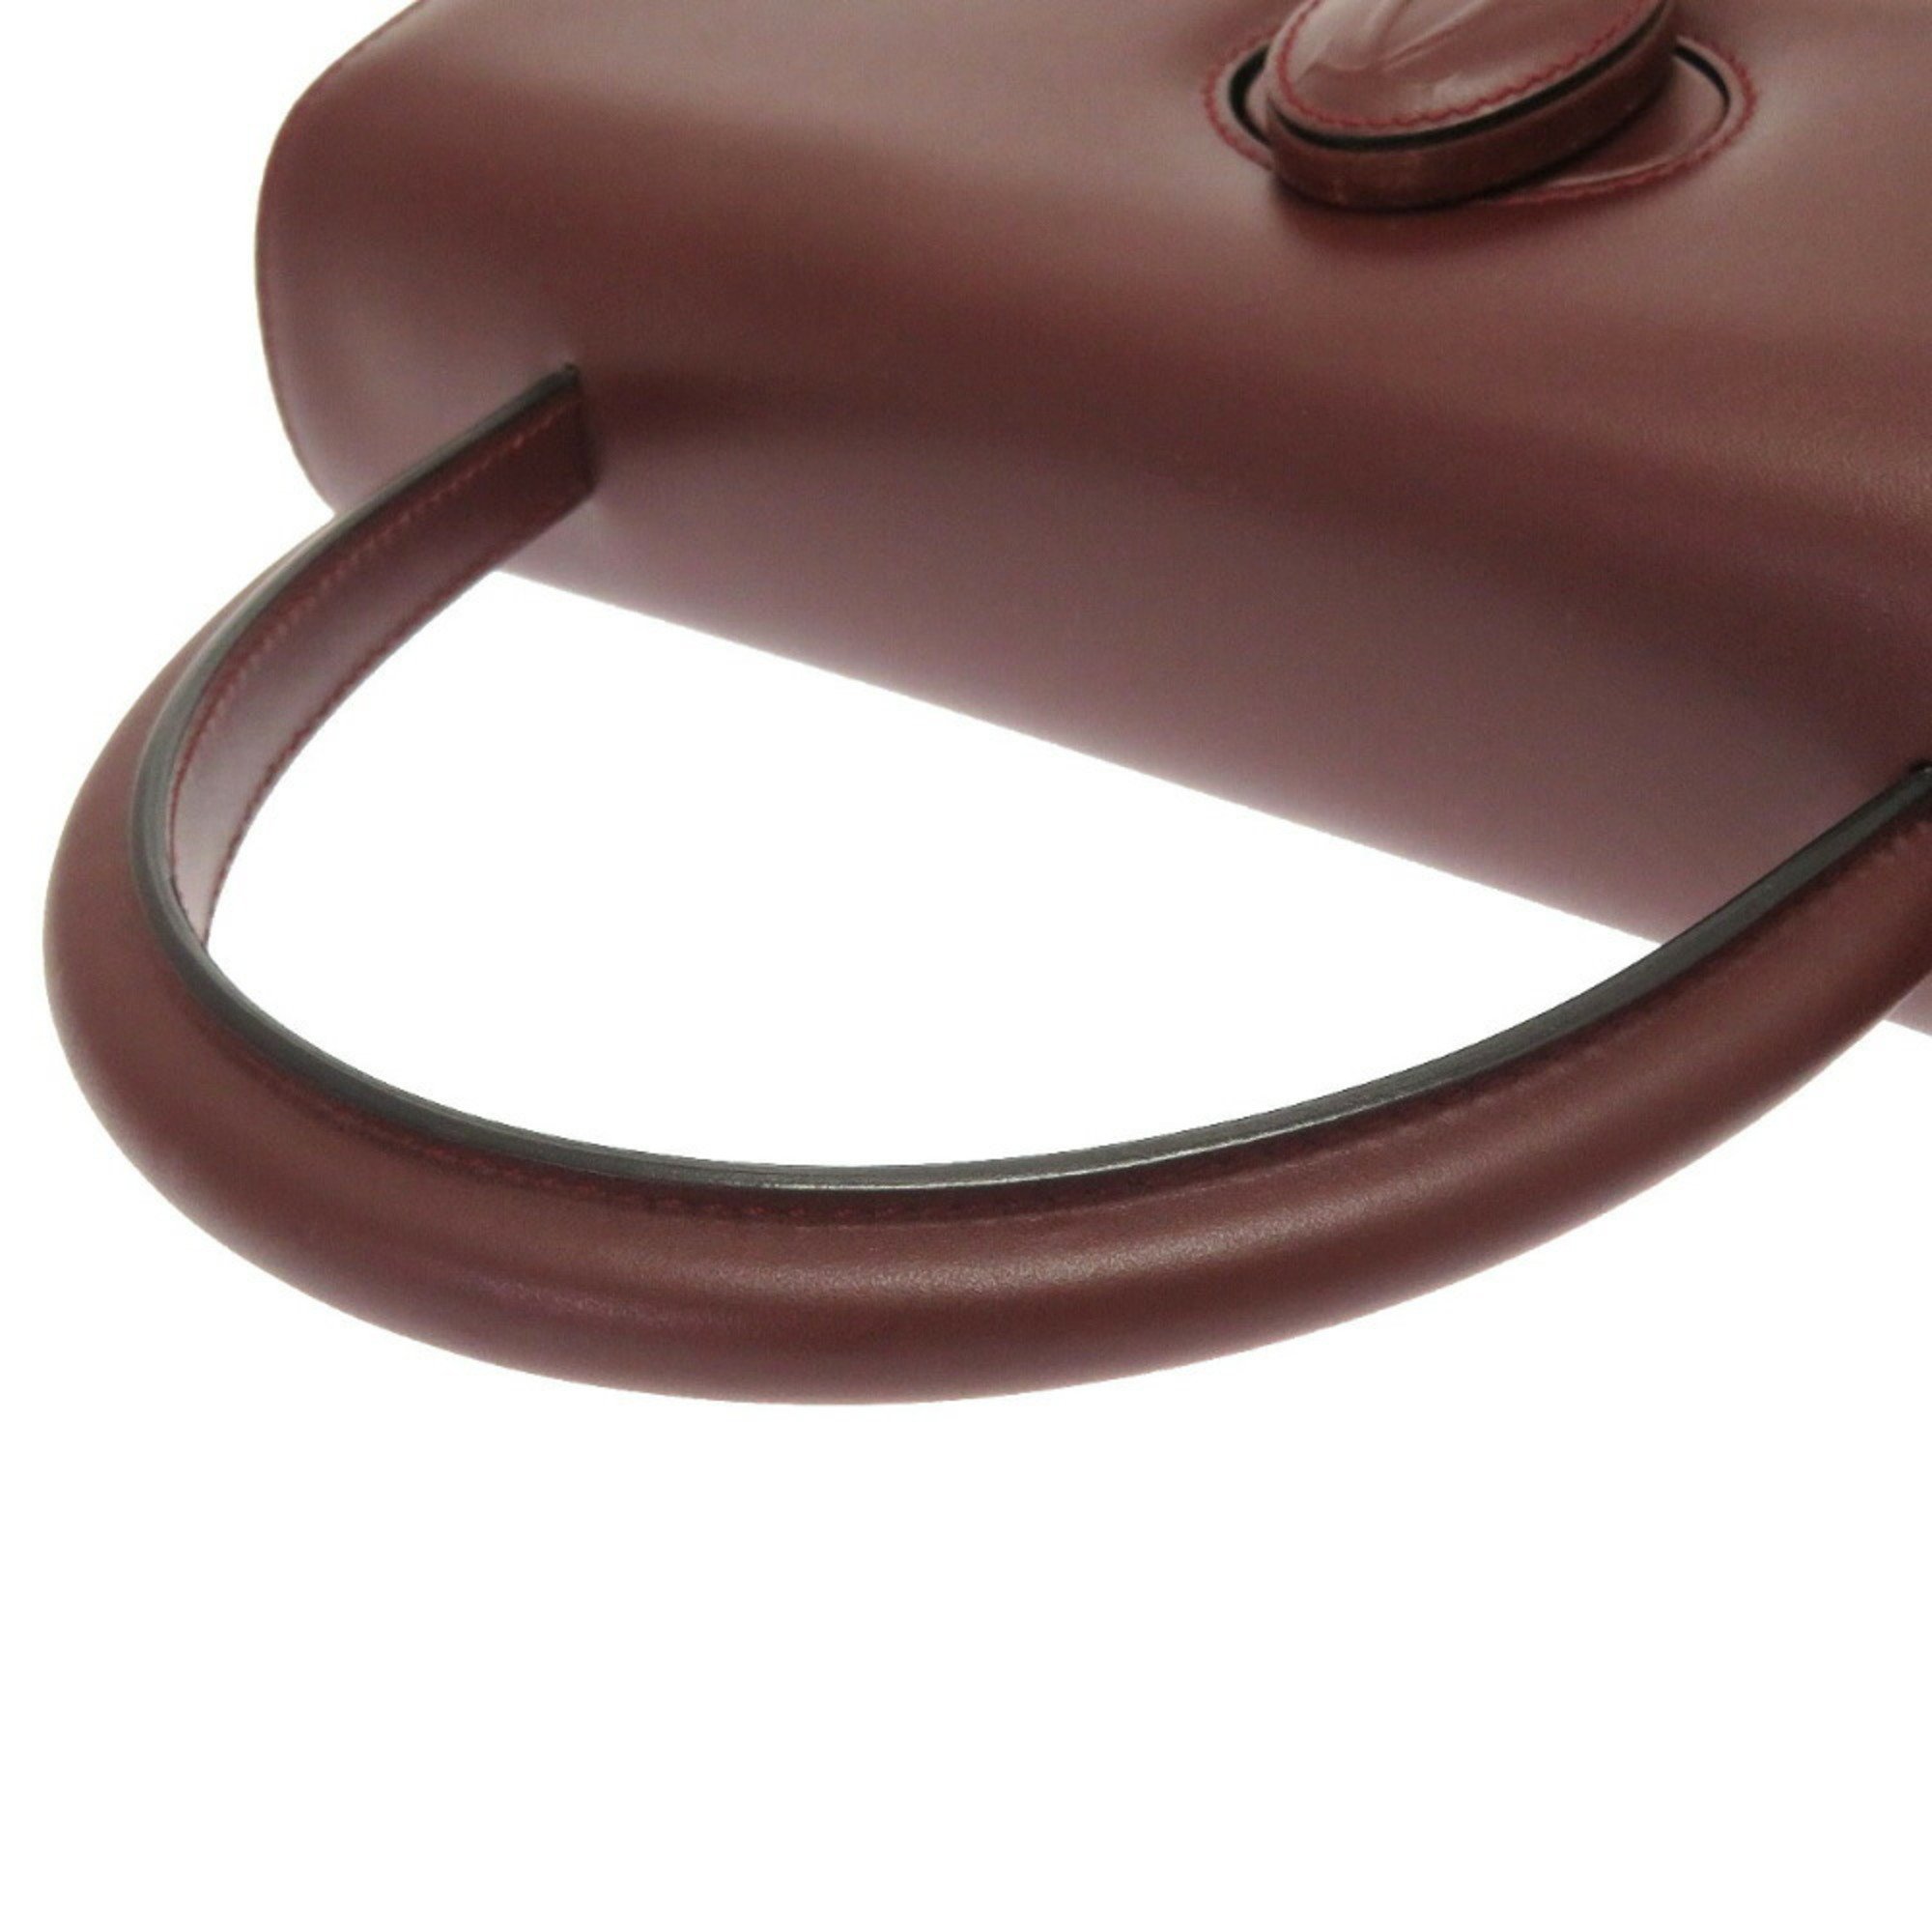 Cartier must line leather bordeaux handbag red